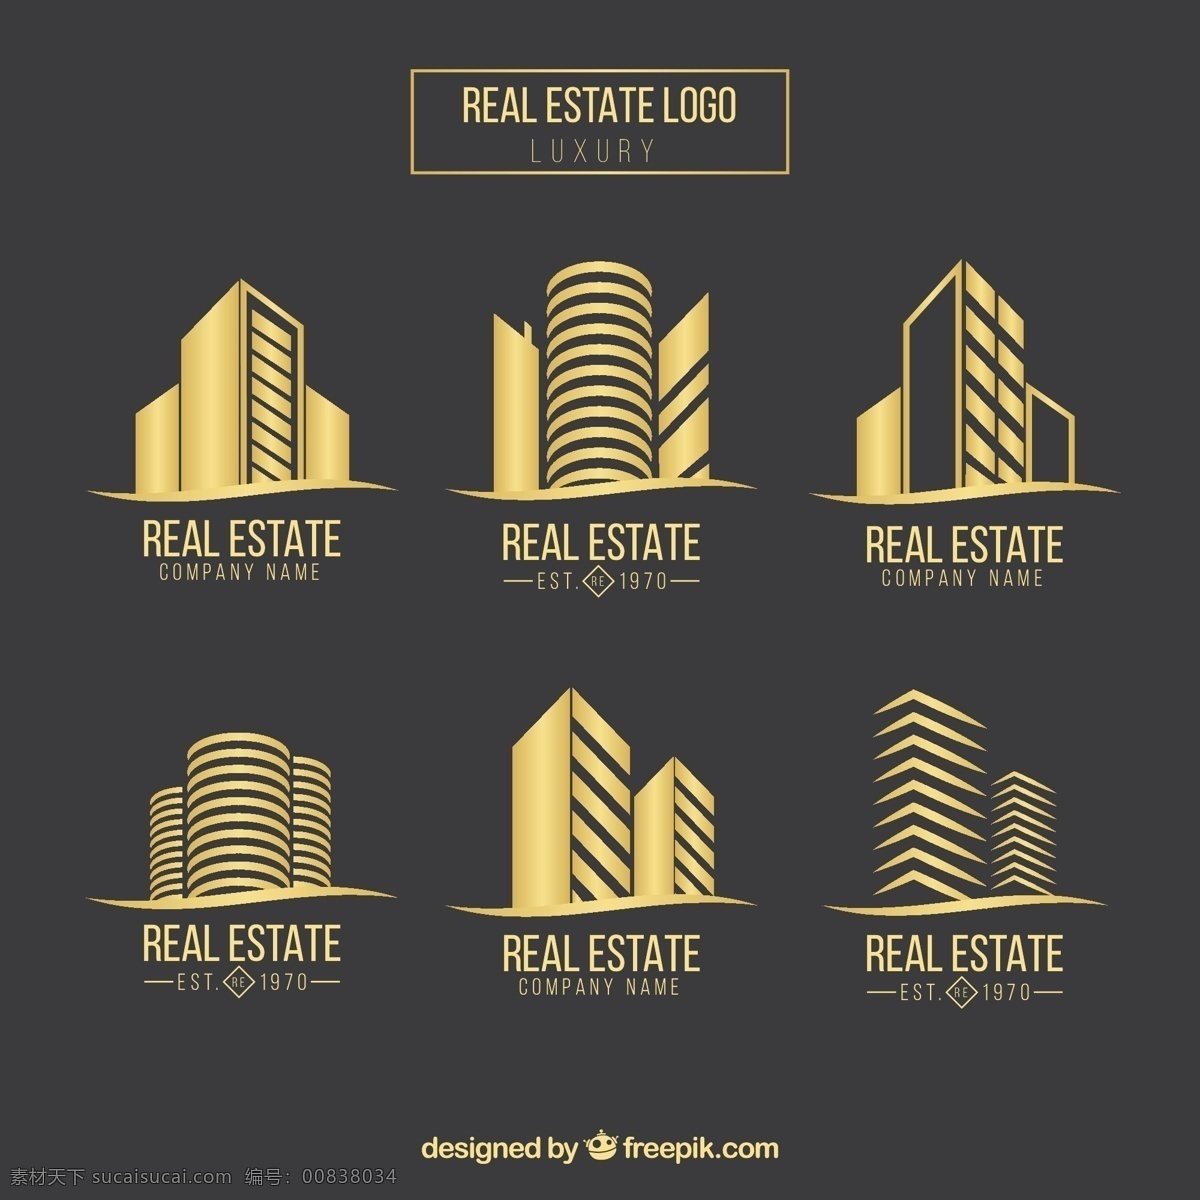 真实 状态 标识 集合 商业 销售 黄金 建筑 家庭 房地产 企业 投资 财产 结构 概念 收集 国家 外部 灰色